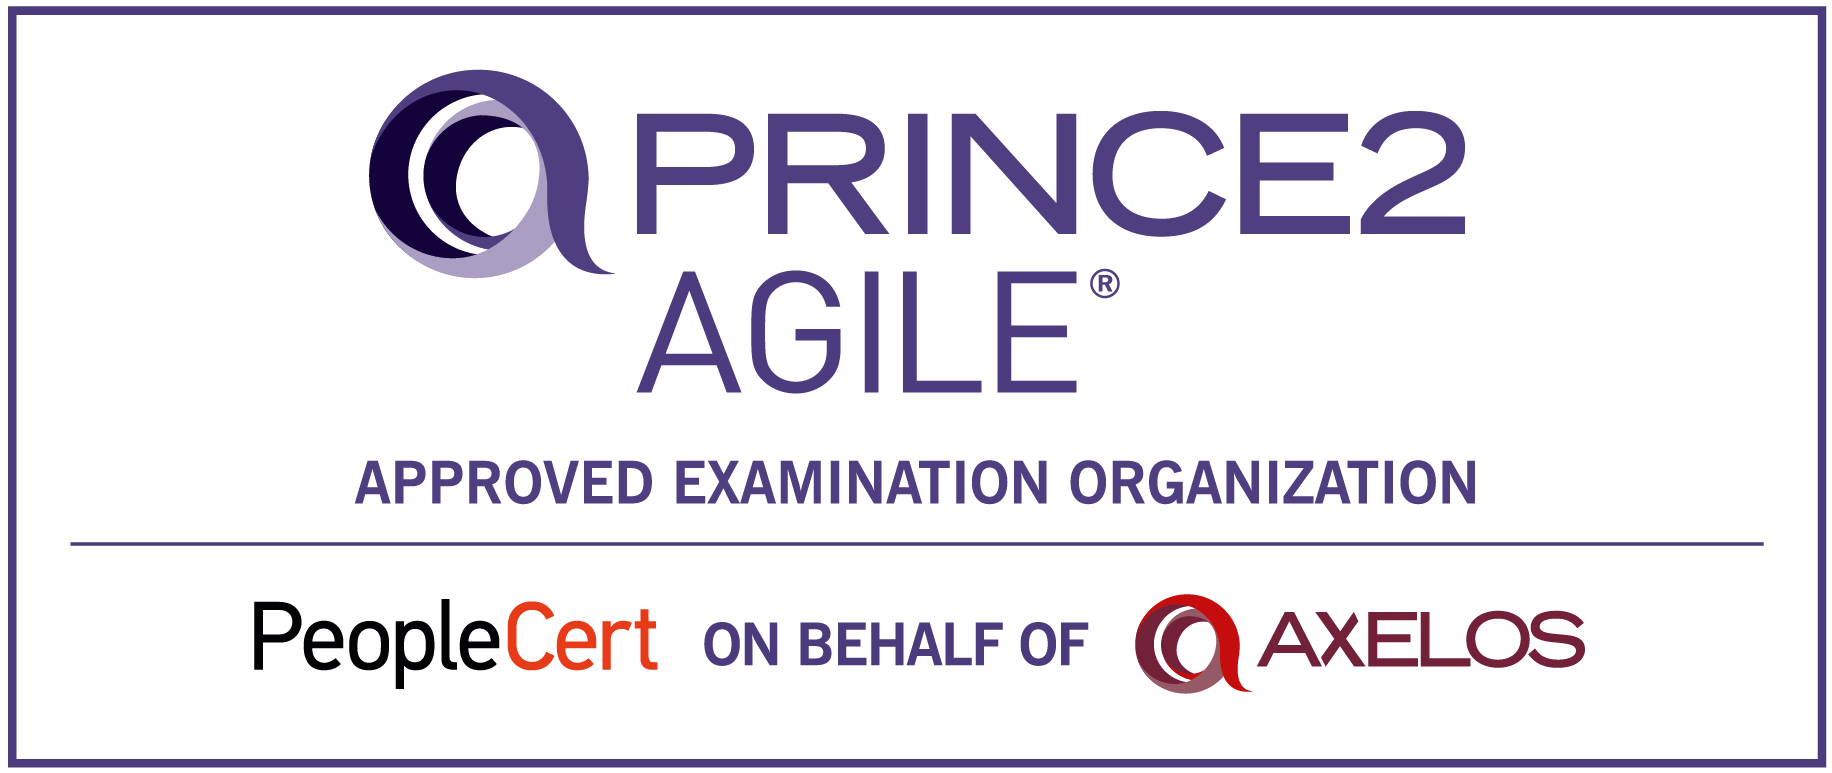 PRINCE2Agile_AEO-logo-e1672783728974.png